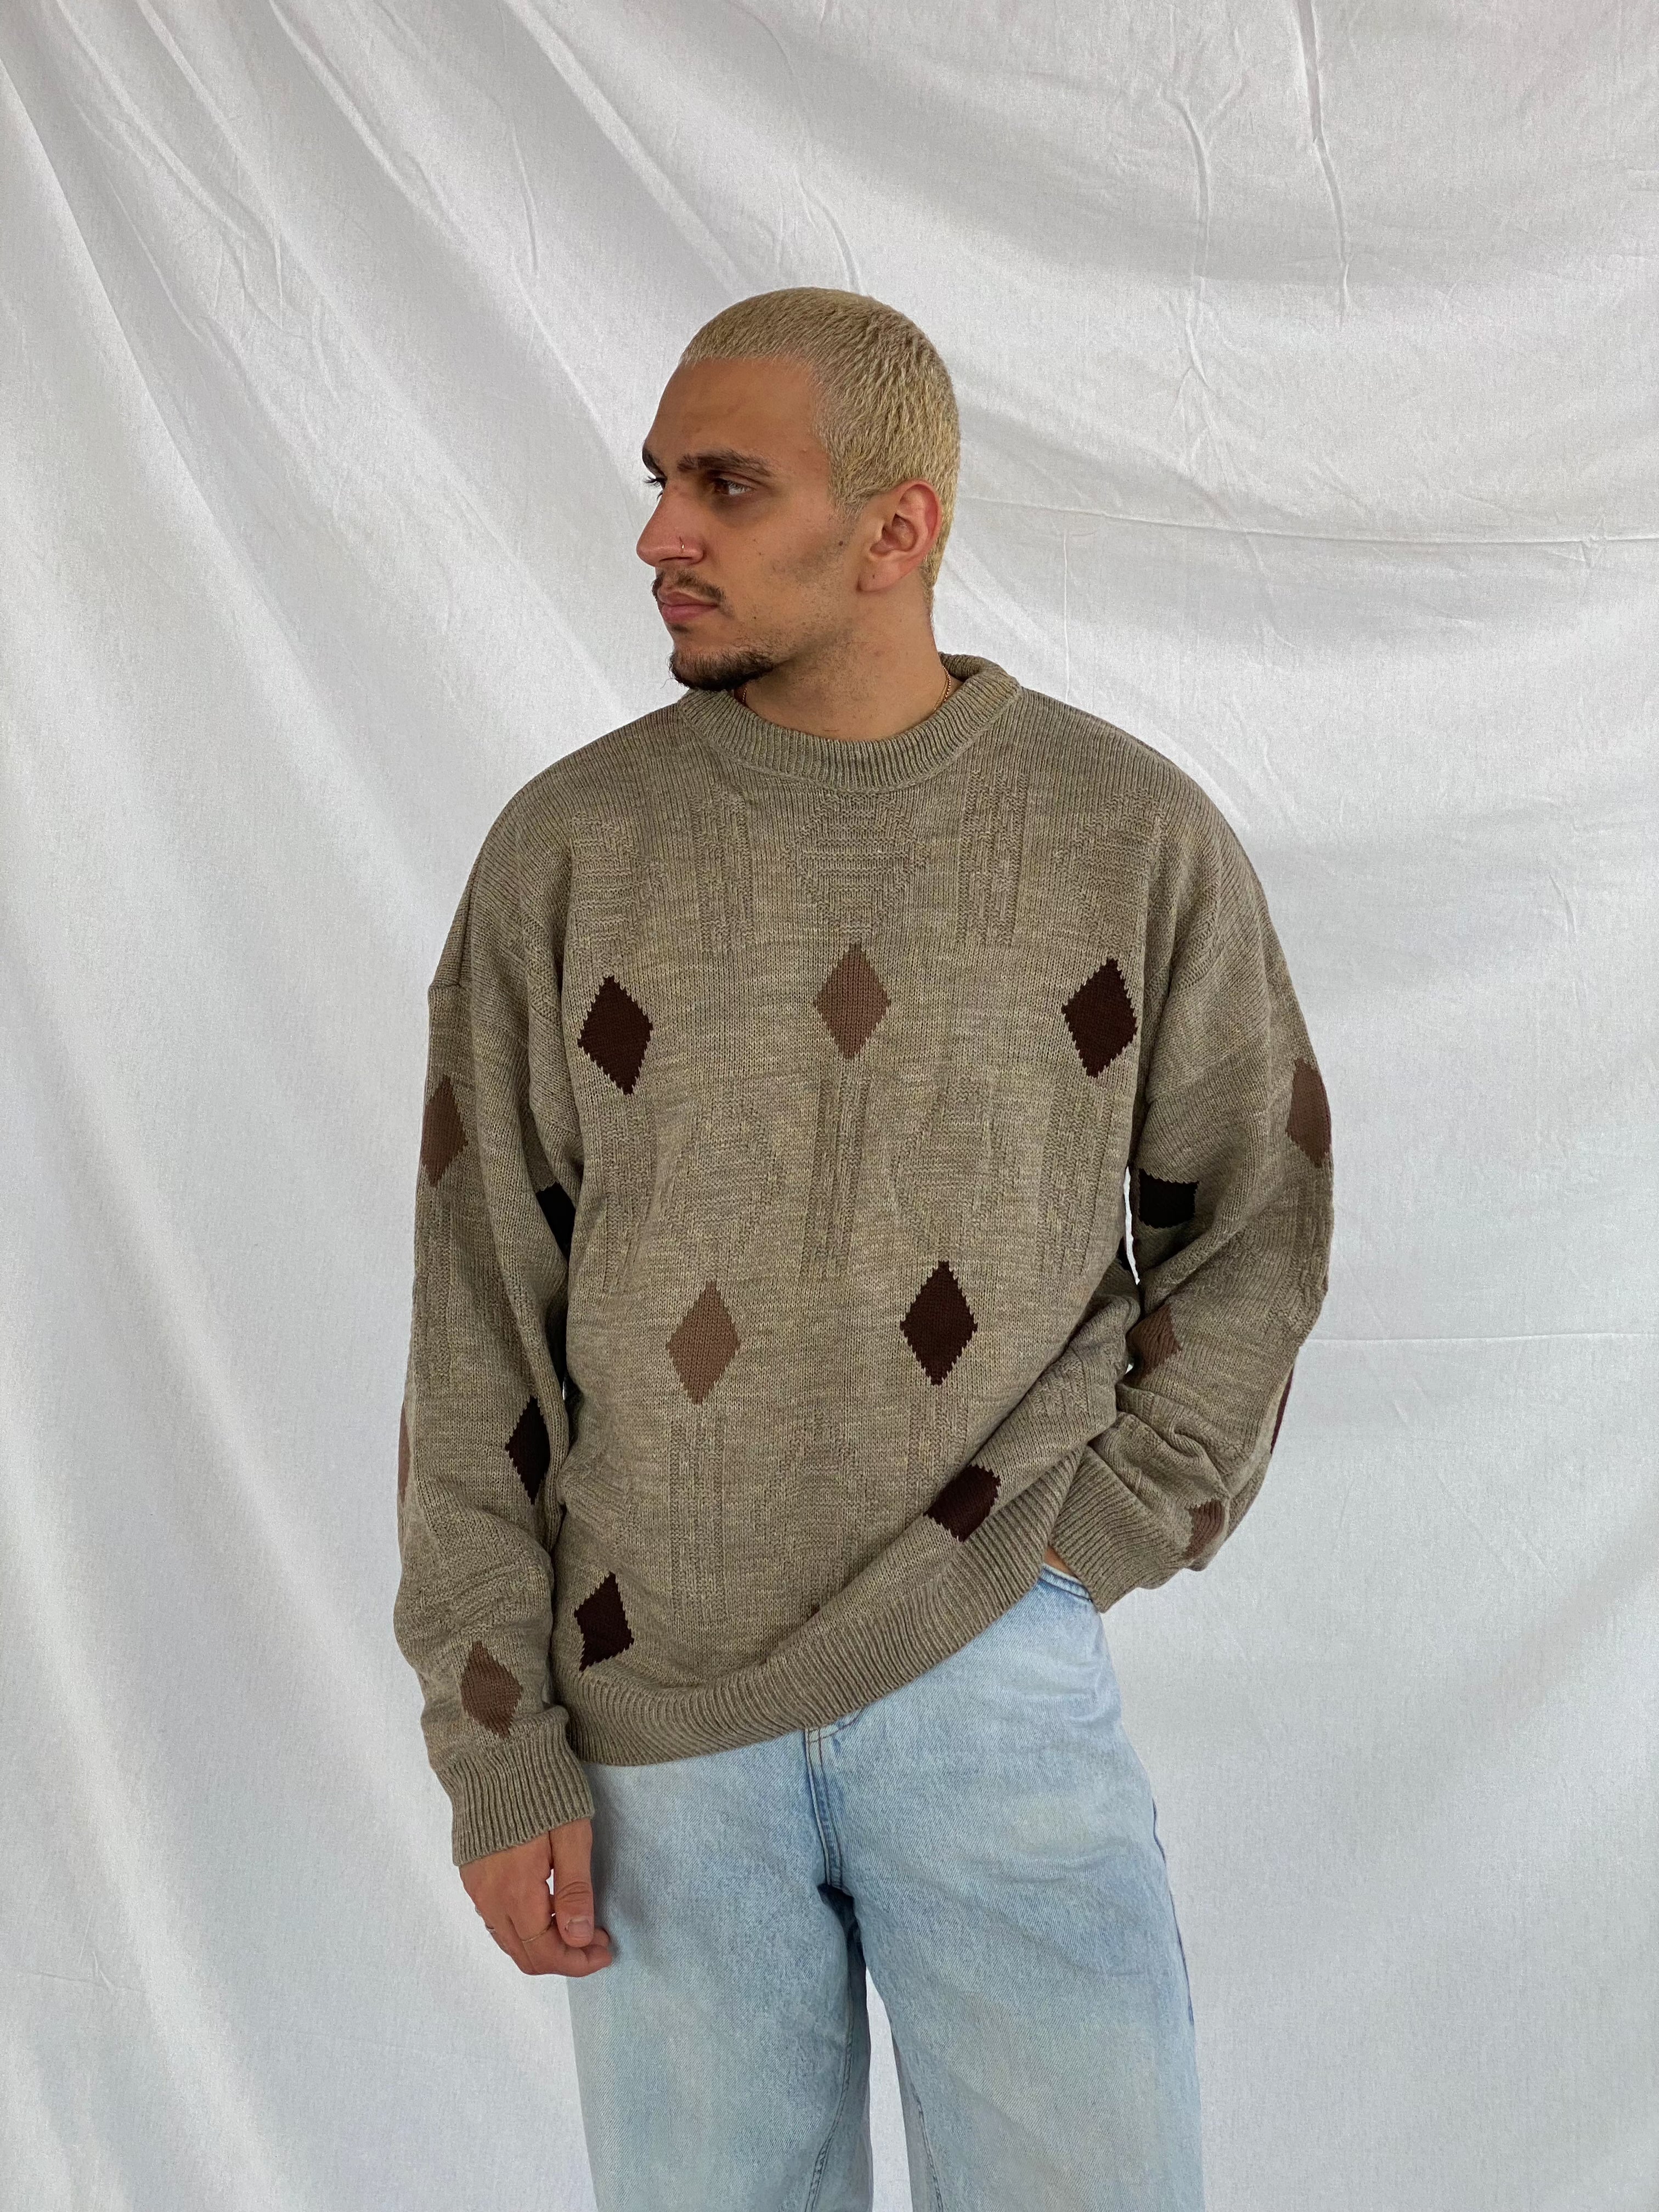 Vintage knitted Sweater - Balagan Vintage Sweater 90s, knit, knitted, knitted sweater, men, streetwear, vintage, vintage sweater, winter